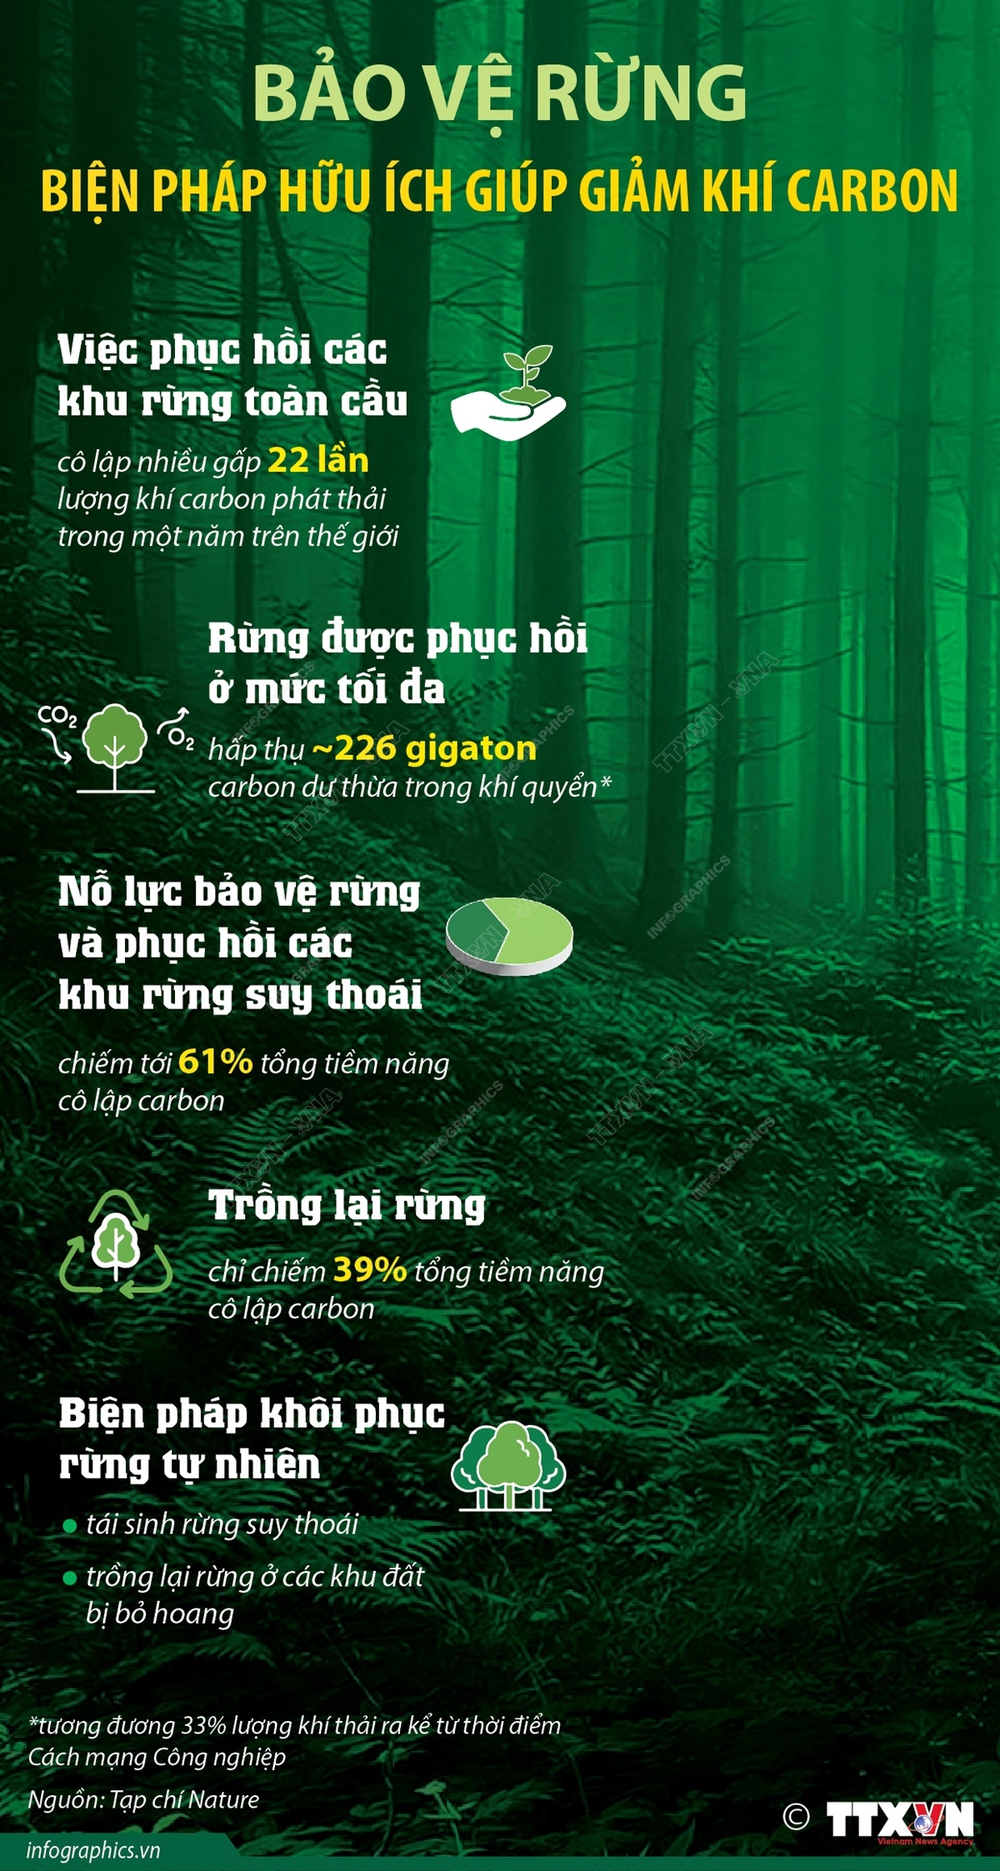 Bảo vệ rừng - biện pháp hữu ích giúp giảm khí carbon - Ảnh 1.